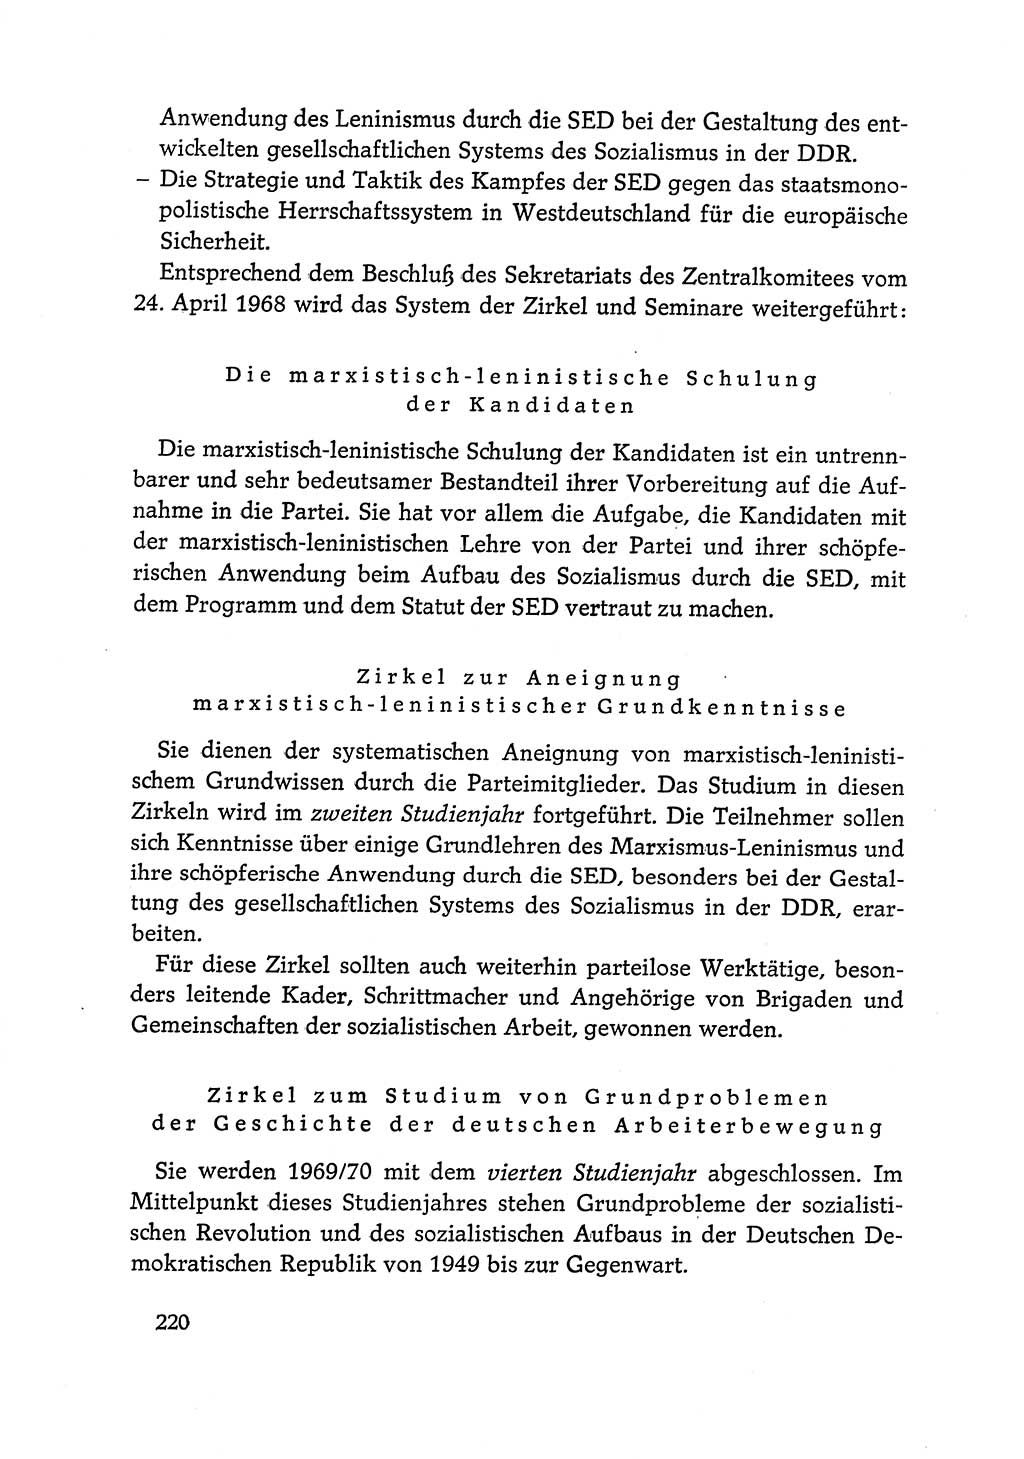 Dokumente der Sozialistischen Einheitspartei Deutschlands (SED) [Deutsche Demokratische Republik (DDR)] 1968-1969, Seite 220 (Dok. SED DDR 1968-1969, S. 220)